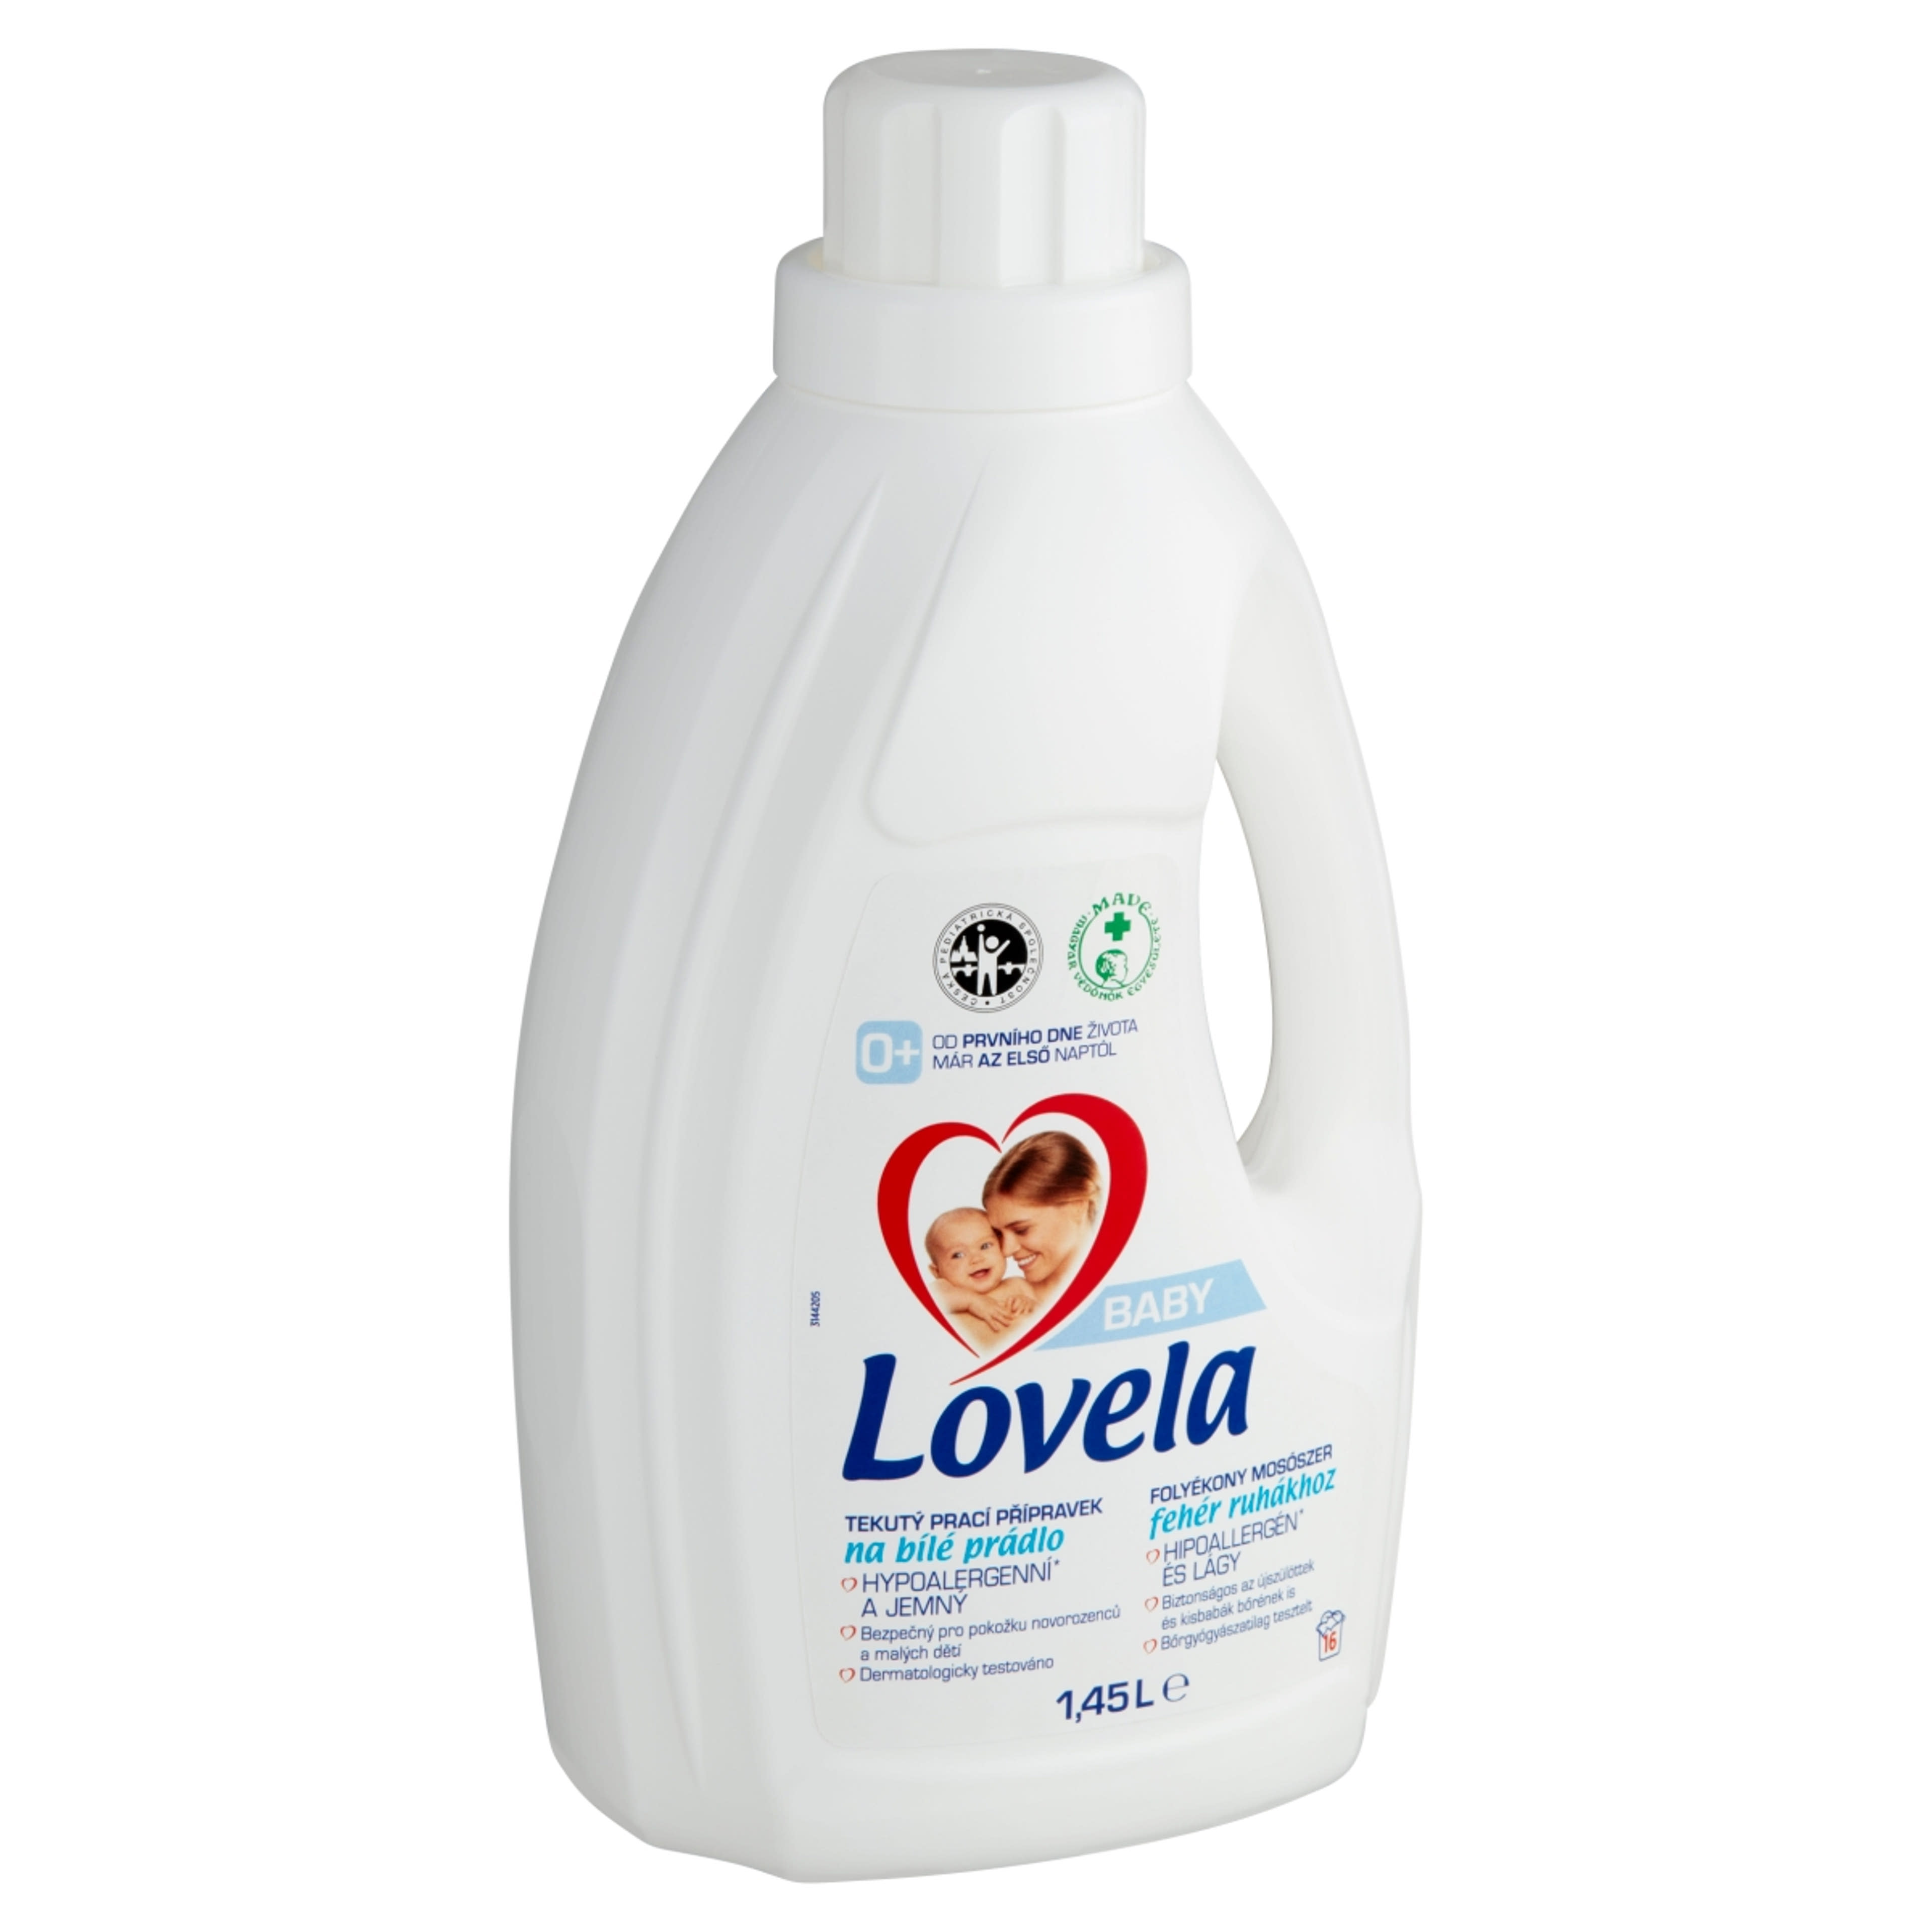 Lovela Baby folyékony mosószer fehér ruhákhoz - 1450 ml-2